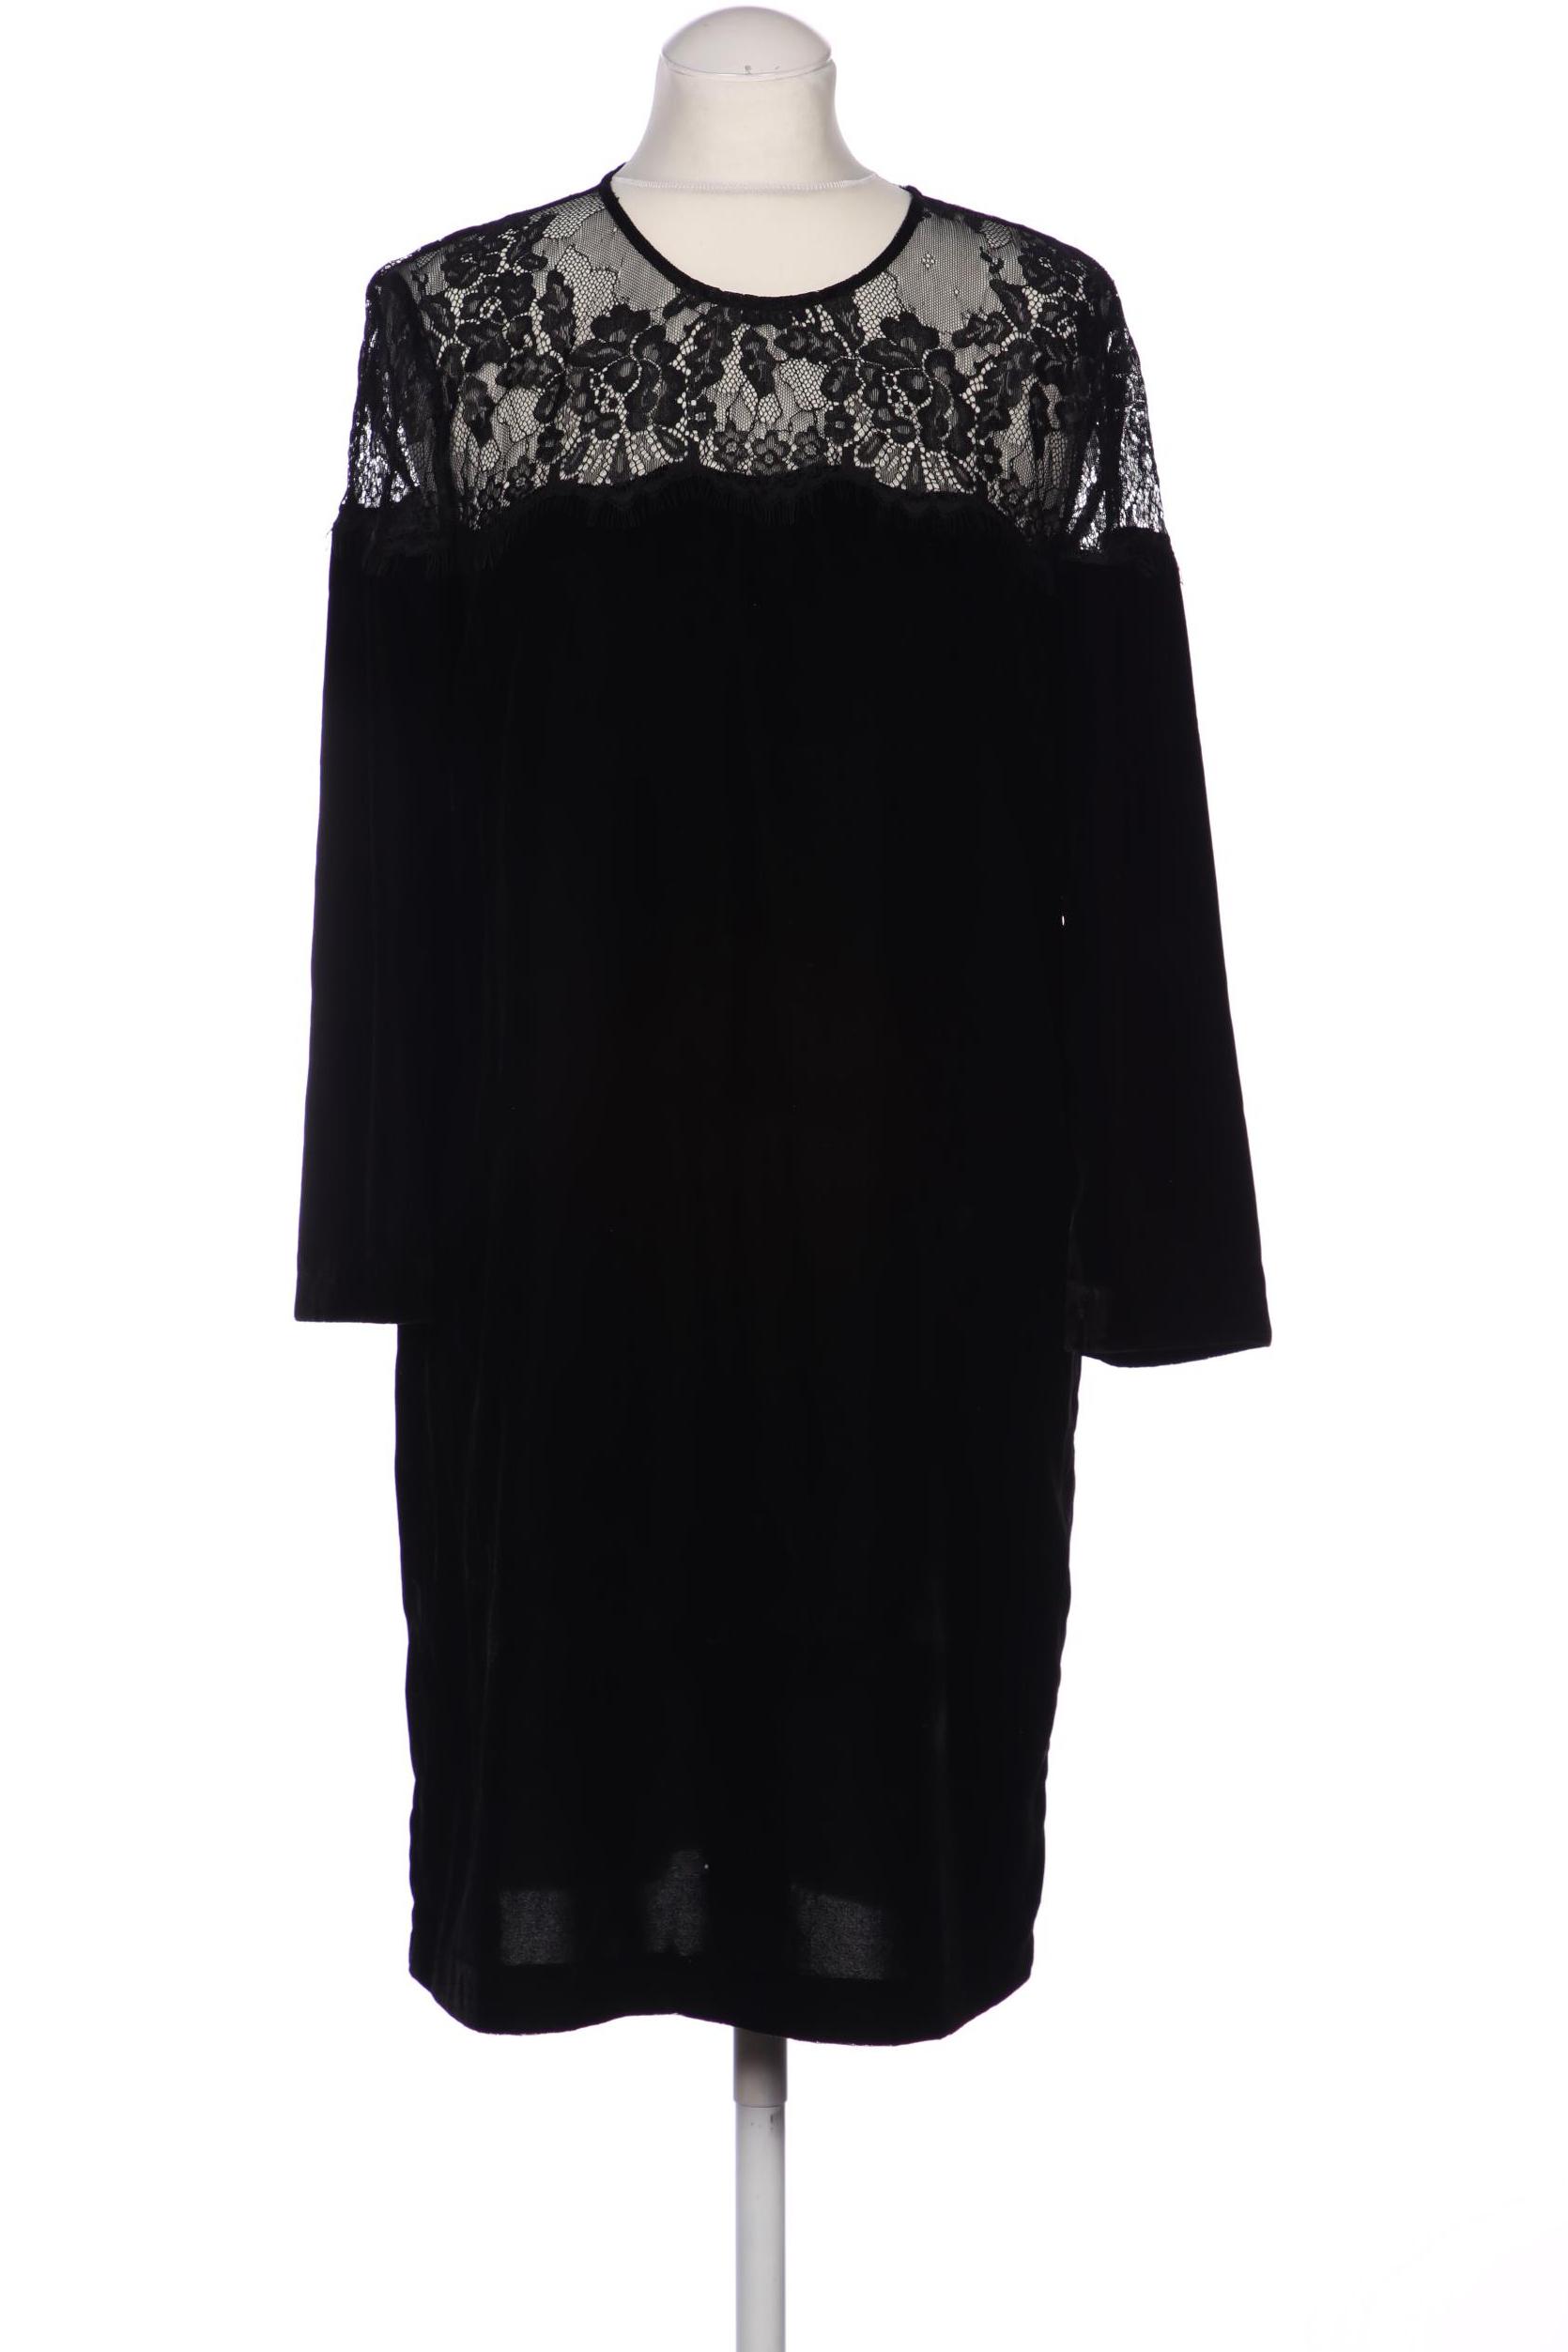 Hallhuber Damen Kleid, schwarz, Gr. 38 von Hallhuber